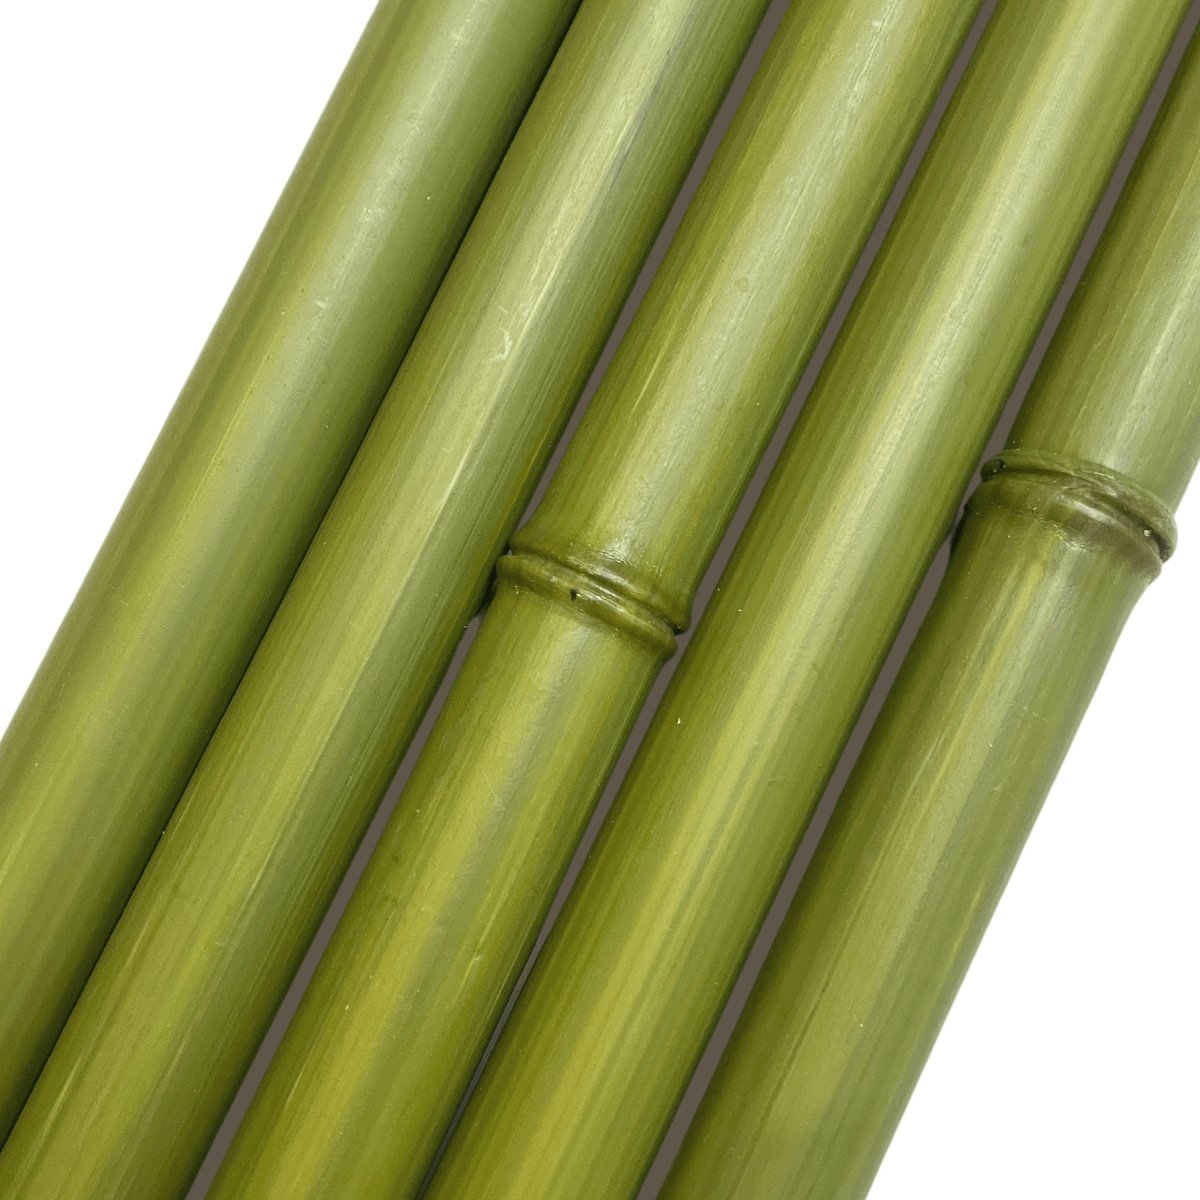 Ensemble de morceaux de bambou synthétiques au diamètre de 32 mm de couleur verte - BoutiquePalmex